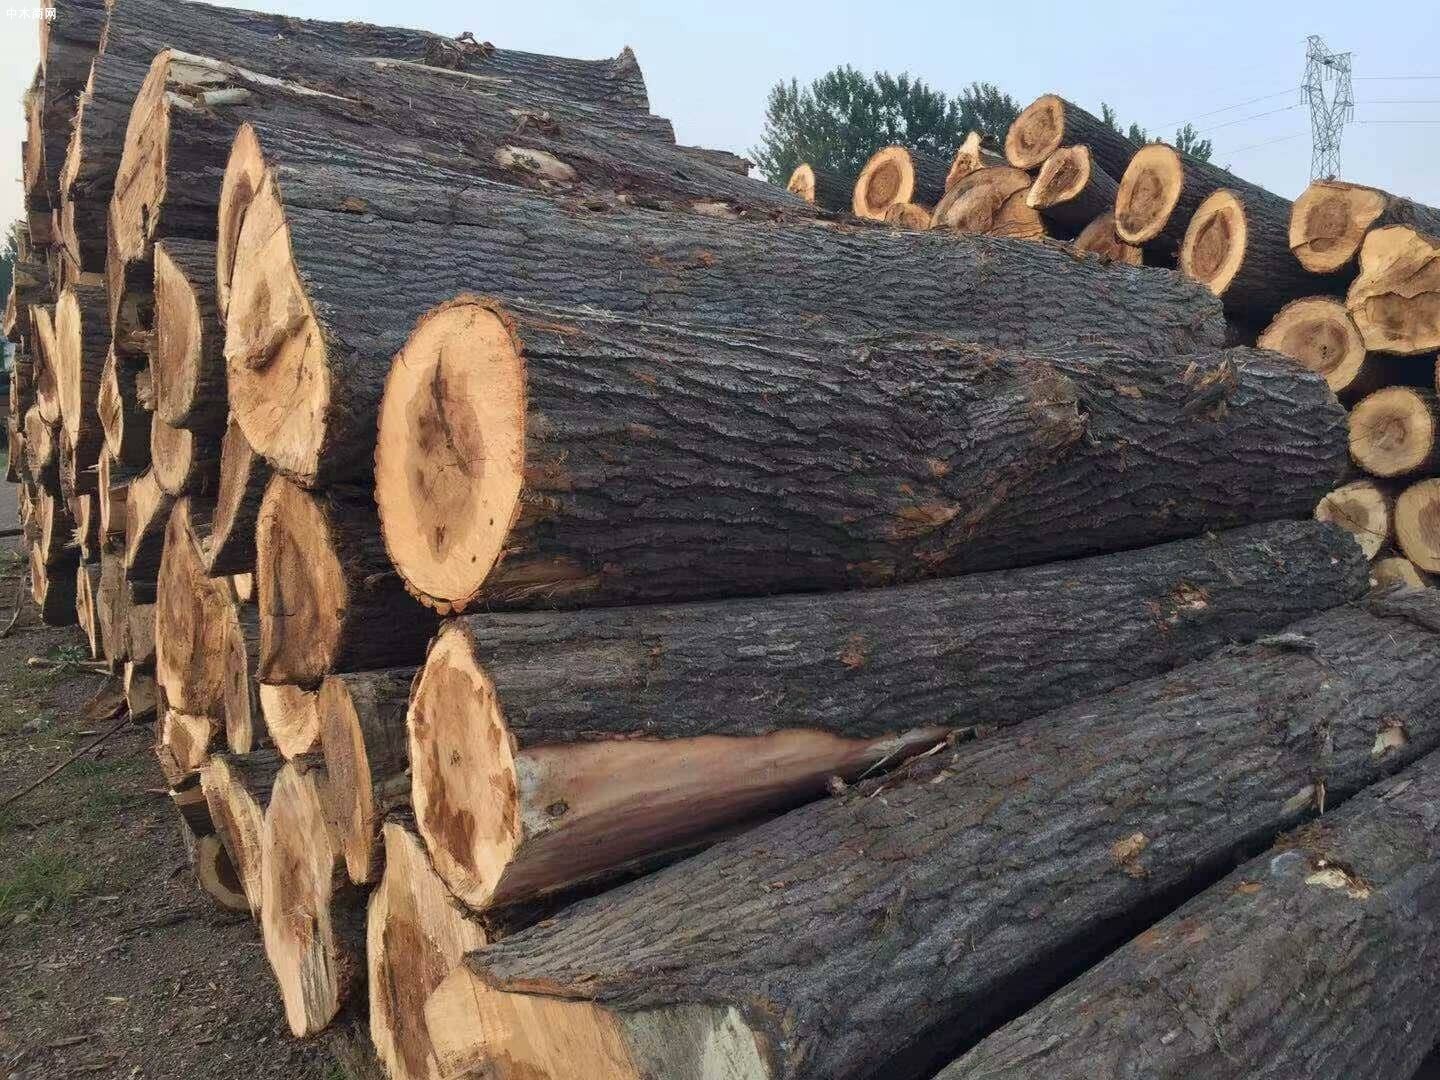 国内原木进口有望在第三季度回升